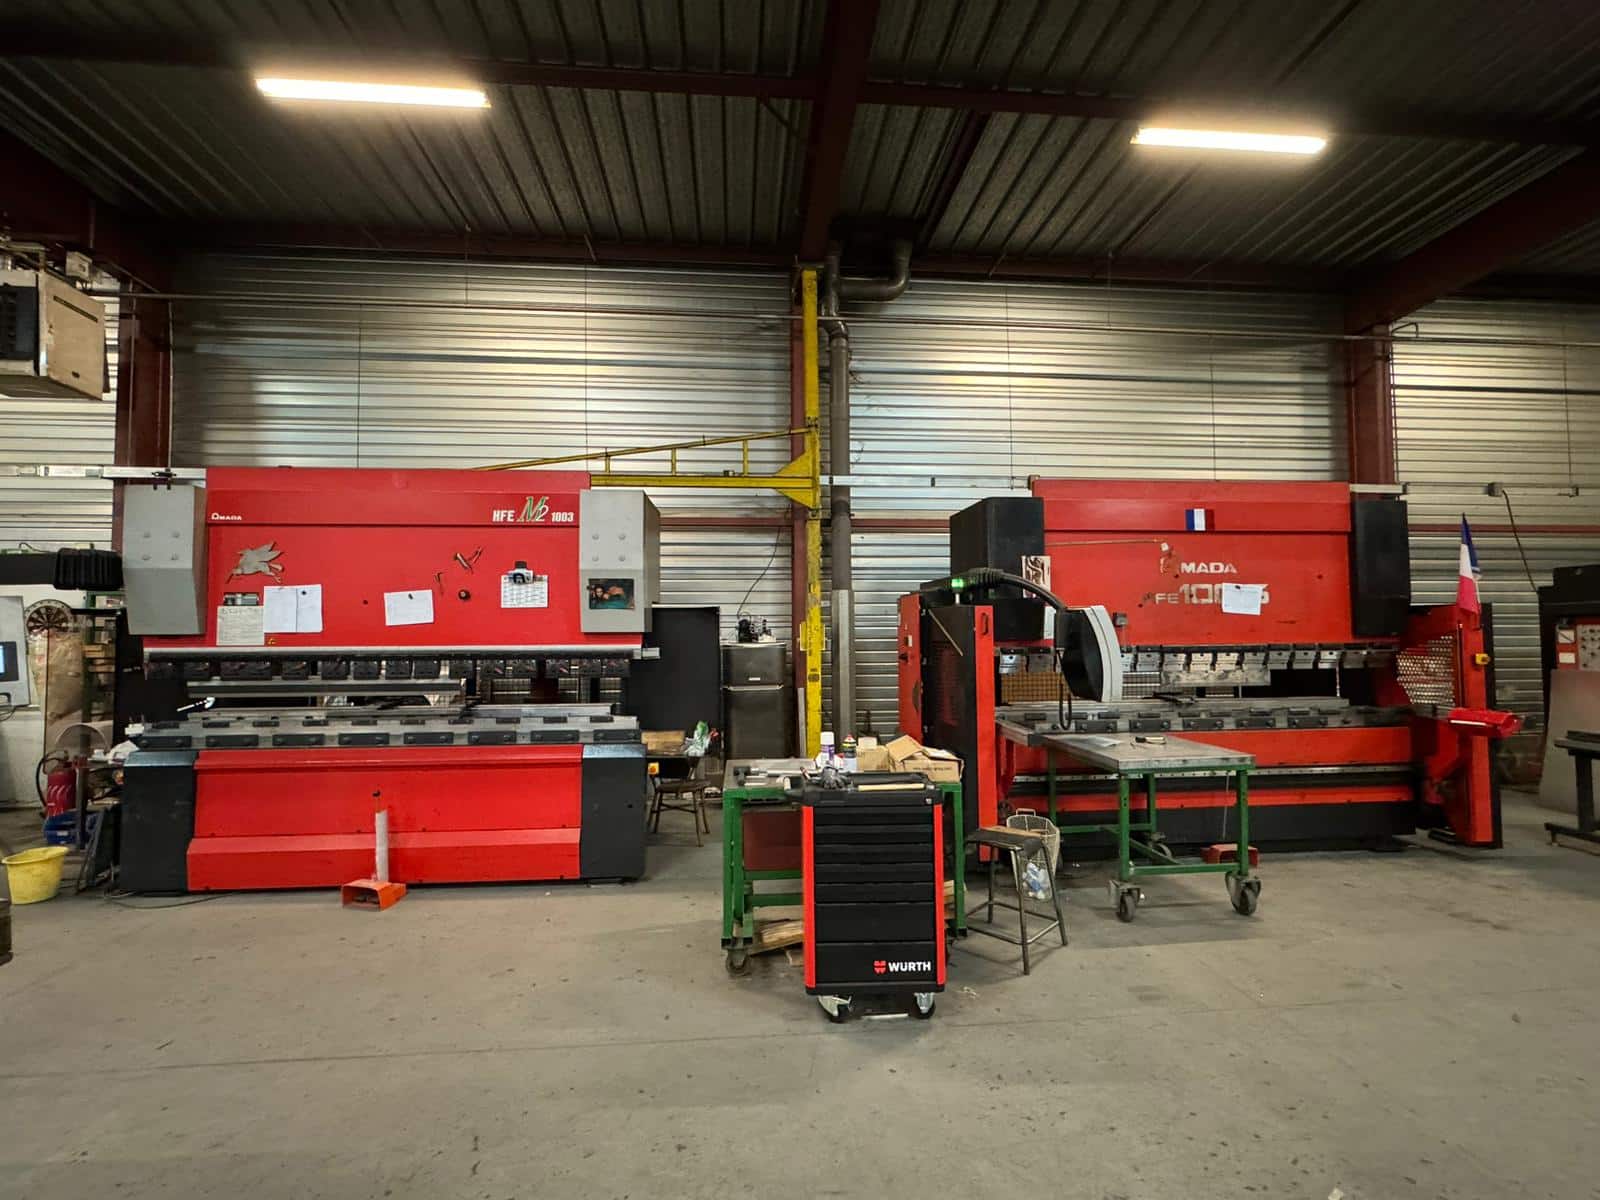 Image de présentation d'un atelier industriel spacieux avec diverses machines en action